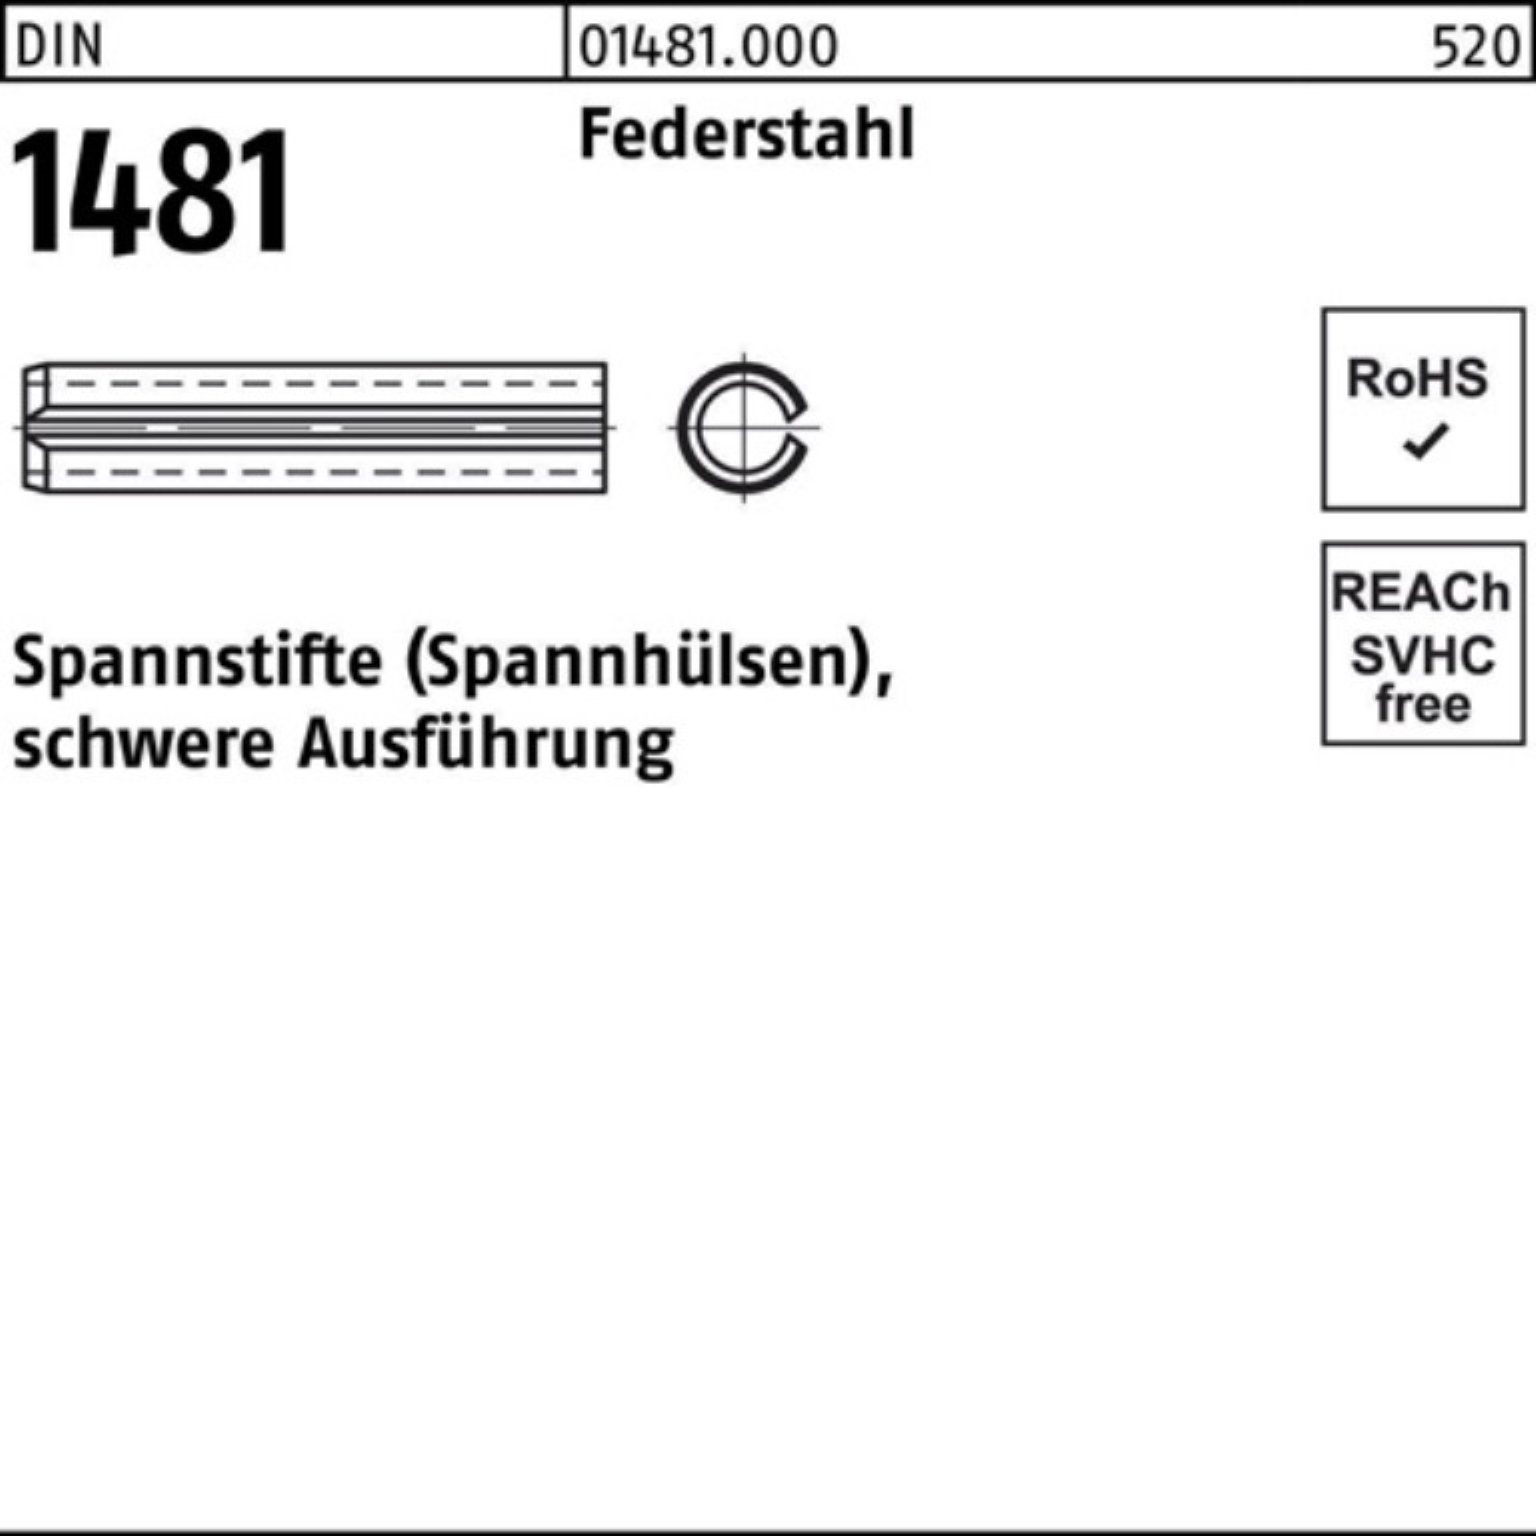 1 3x Spannstift Ausführung 1000er Reyher Spannstift Pack DIN 12 Federstahl 1481 schwere